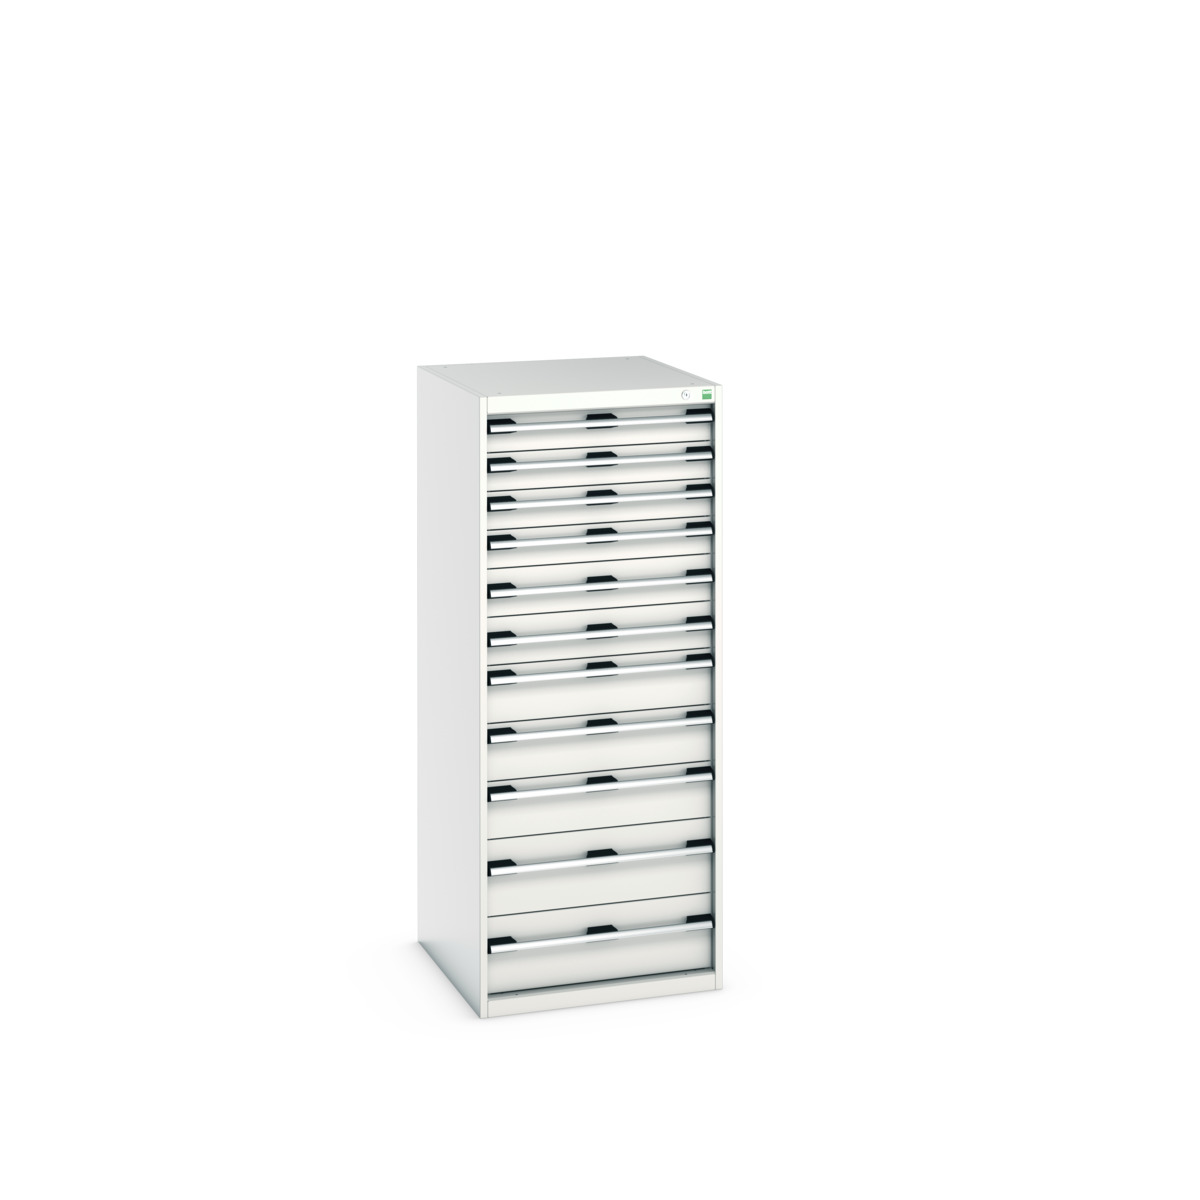 40027047.16V - cubio drawer cabinet